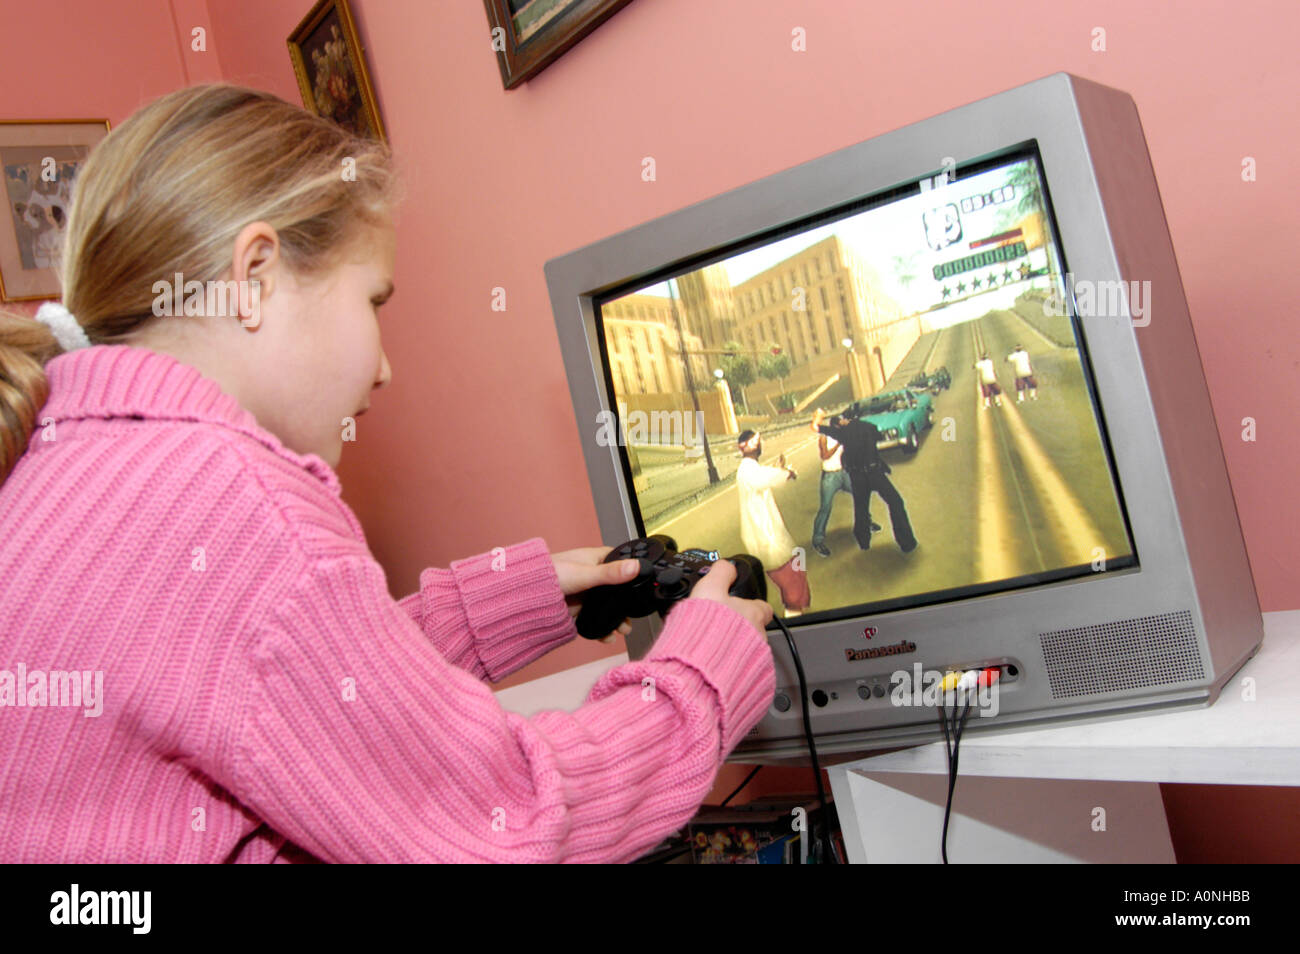 Ragazza giovane giocando violento 18 Certificato computer nominale gioco Grand Theft Auto su Sony Playstation console, England, Regno Unito Foto Stock